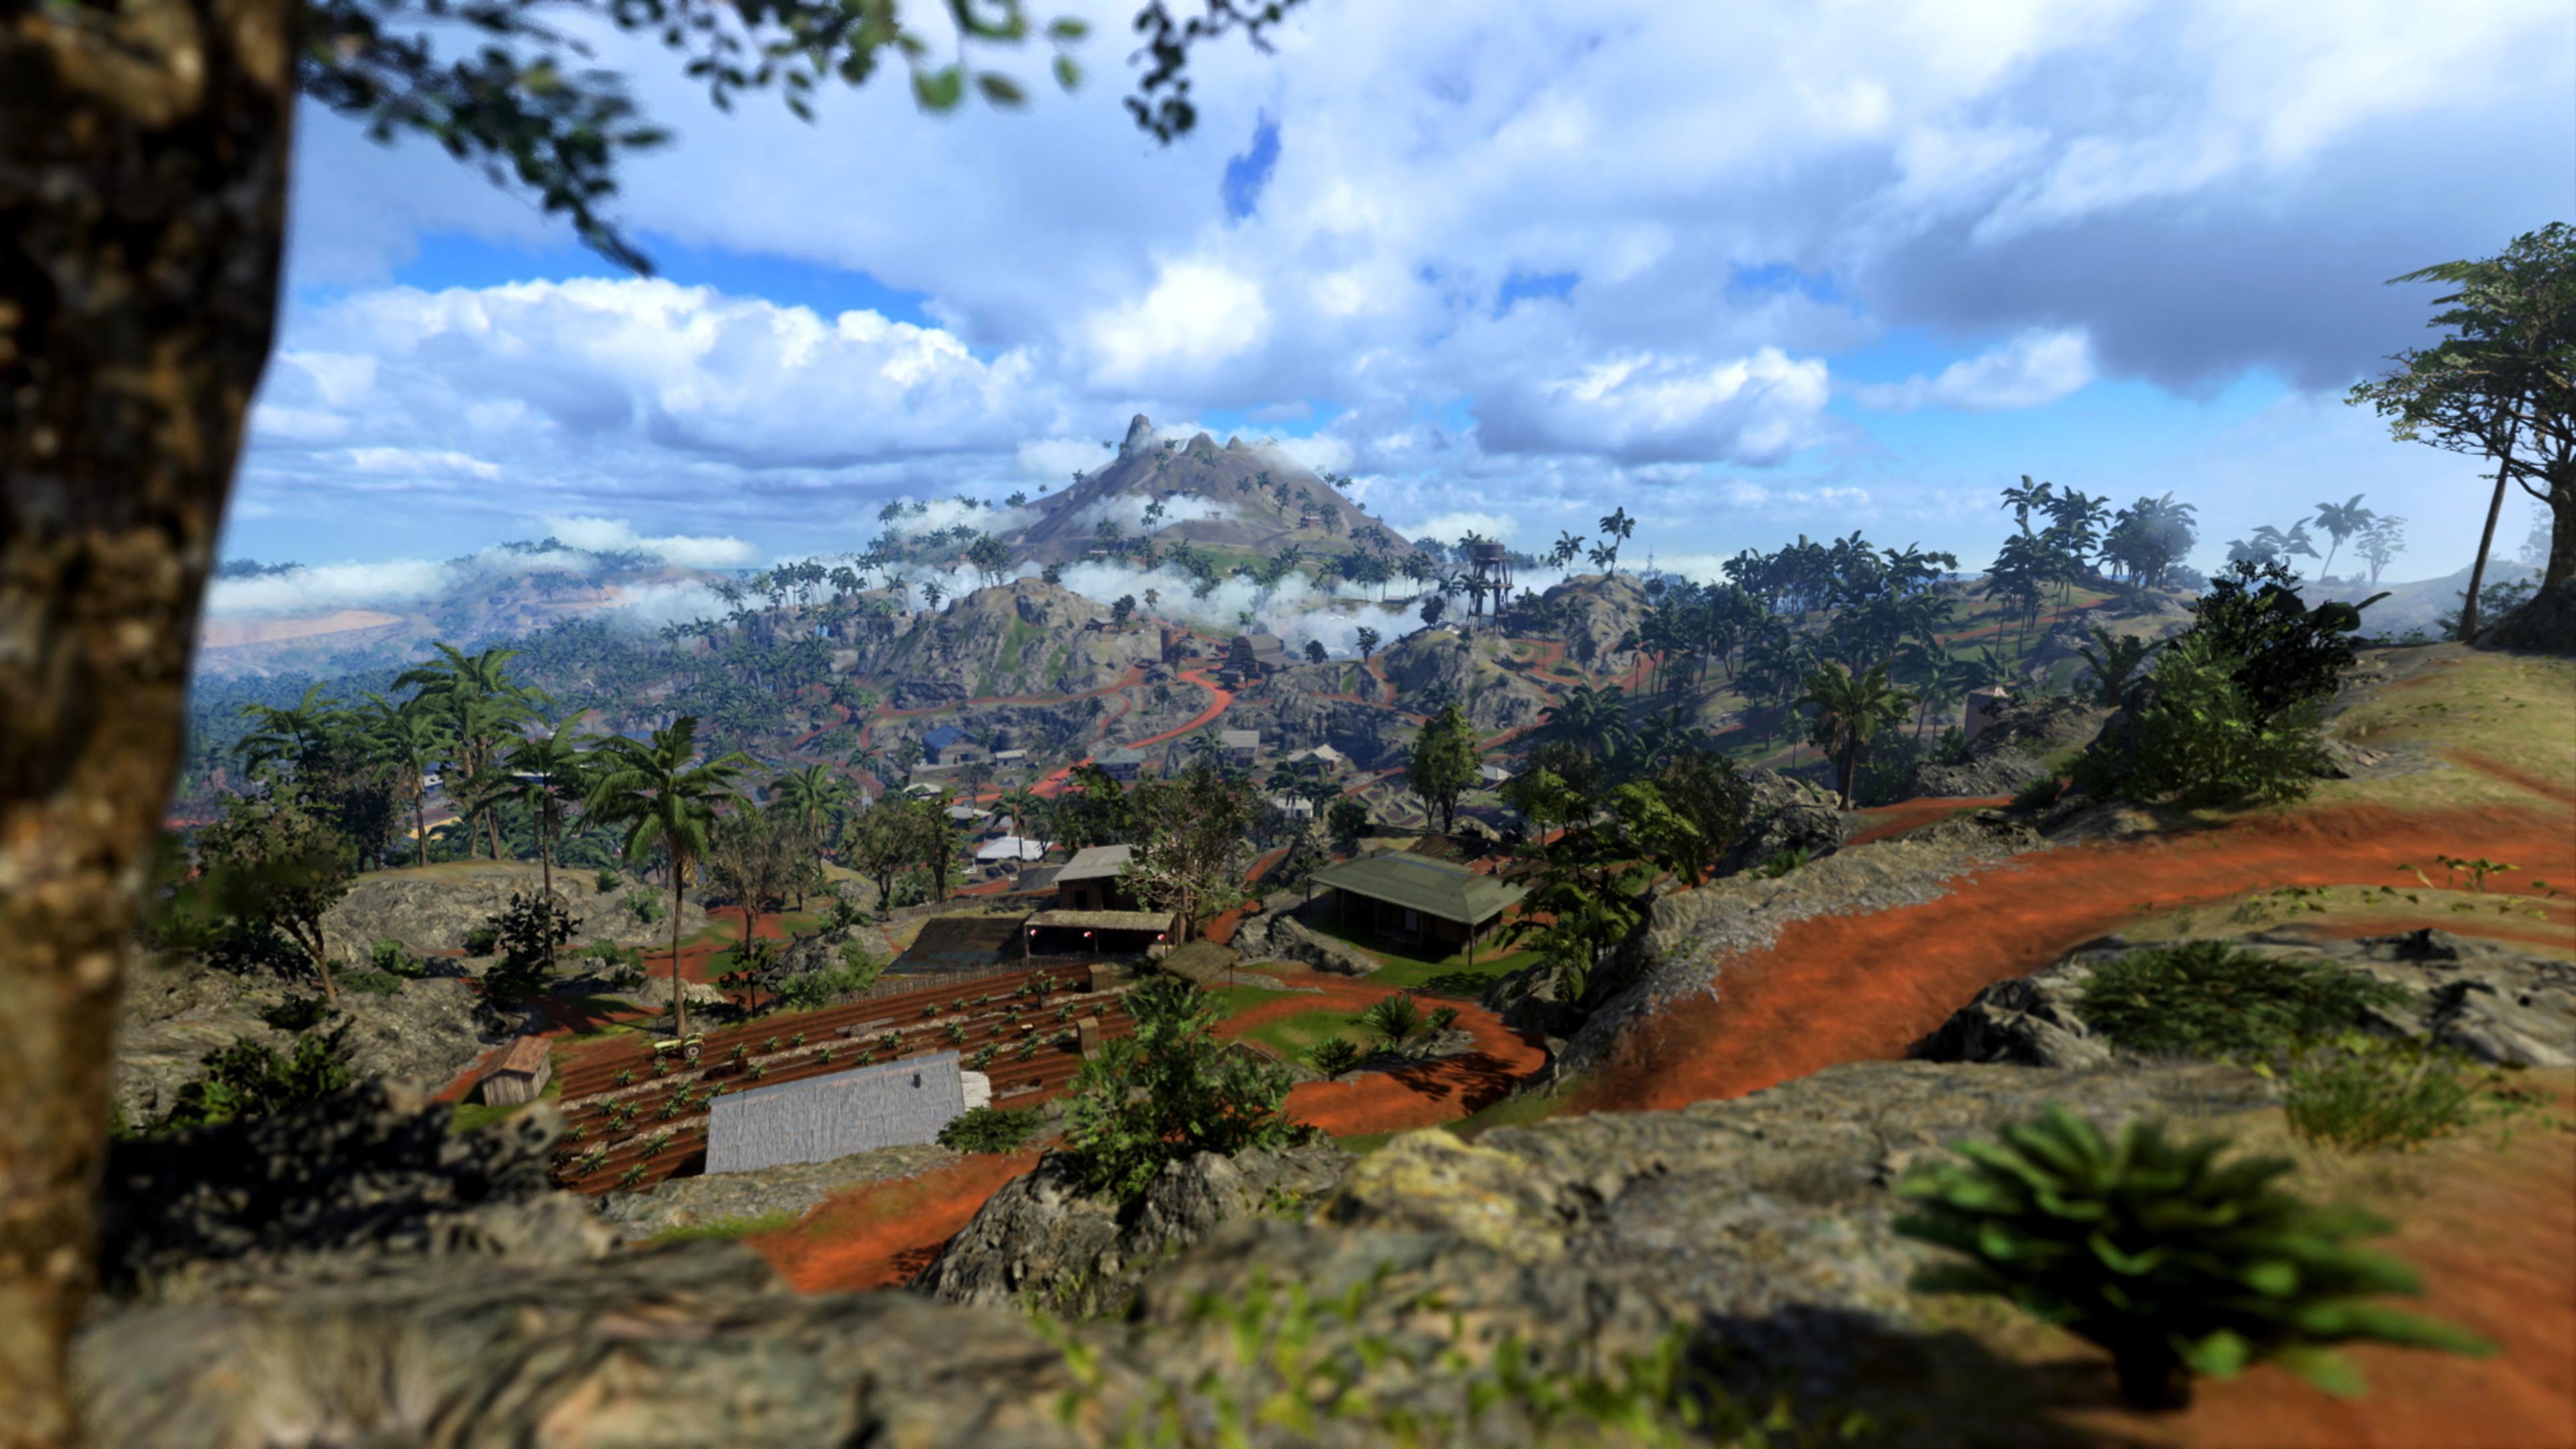 Call of Duty Vanguard – снимок экрана, на котором изображены окрестности новой карты режима Warzone под названием Caldera